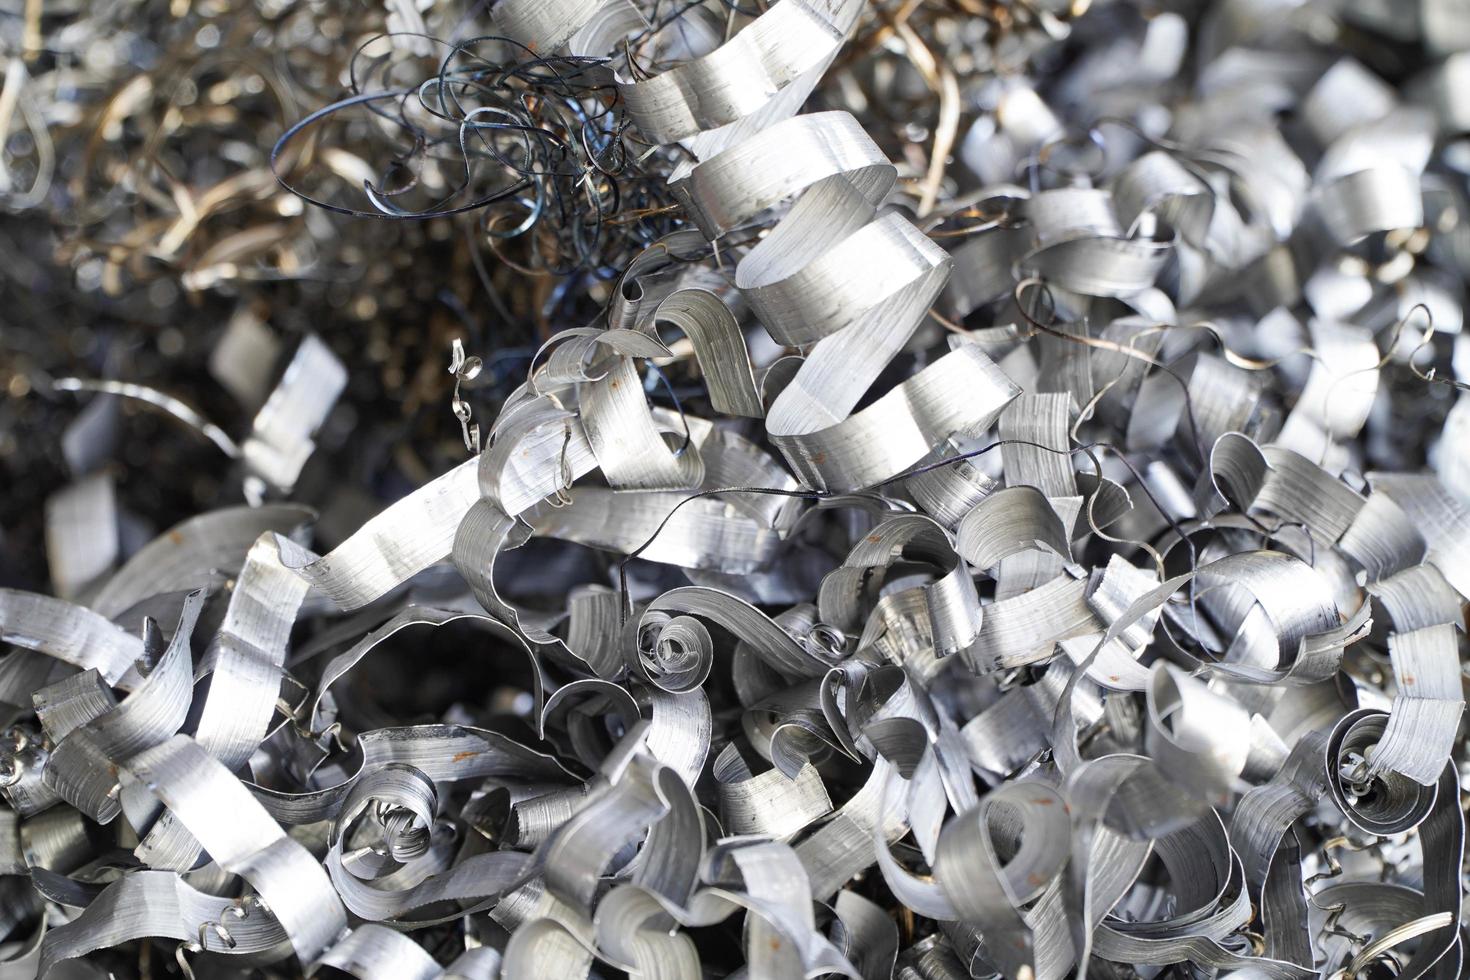 recyclage des déchets d'acier. déchets de copeaux d'aluminium après usinage de pièces métalliques sur un tour cnc. gros plan de copeaux d'acier en spirale torsadée. petite rugosité netteté, photo